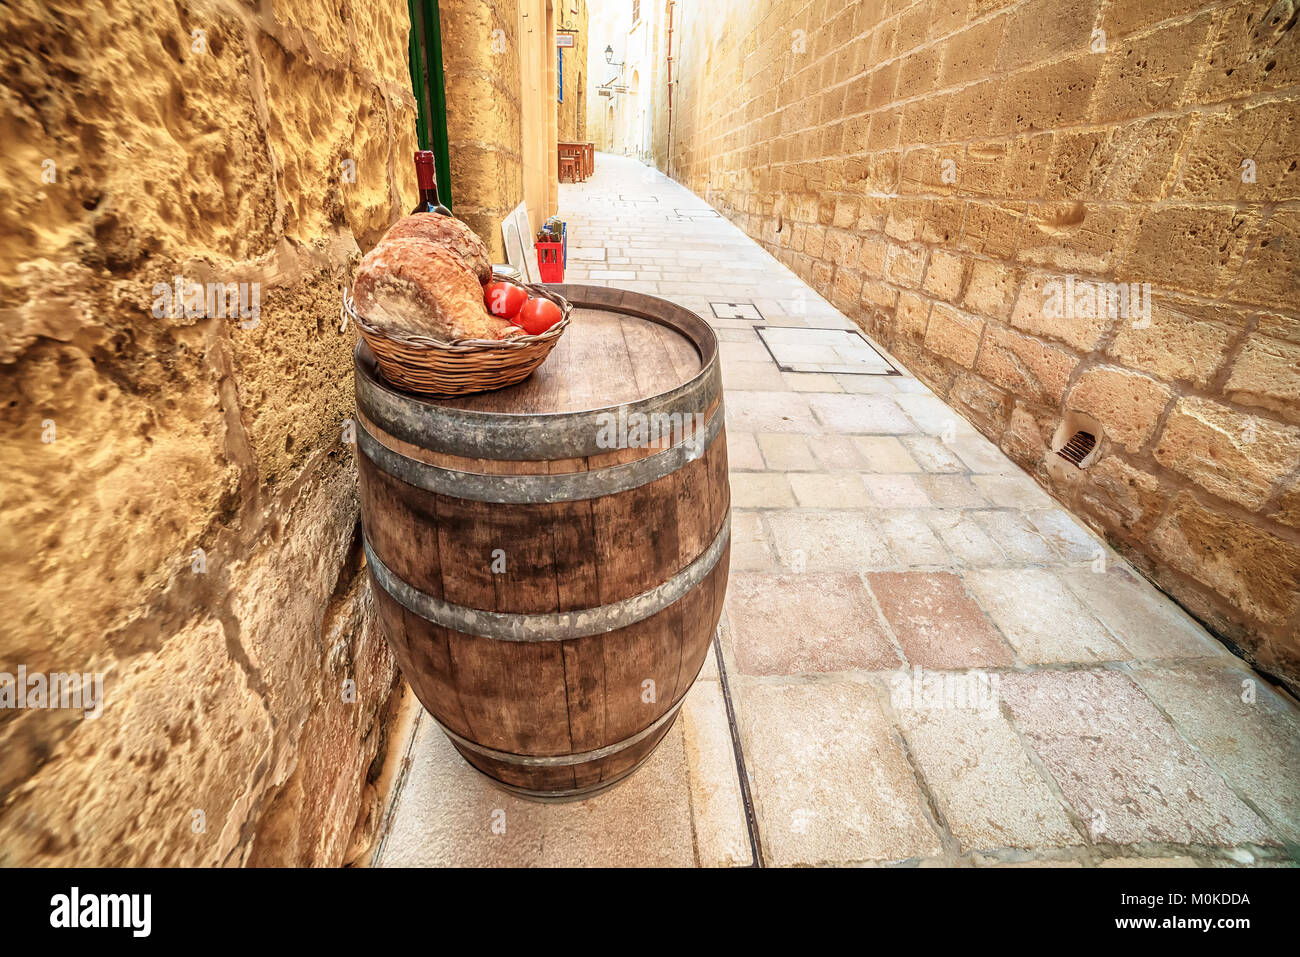 Victoria, Gozo island, Malta: medieval food in the Cittadella, also known as Citadel, Castello Stock Photo